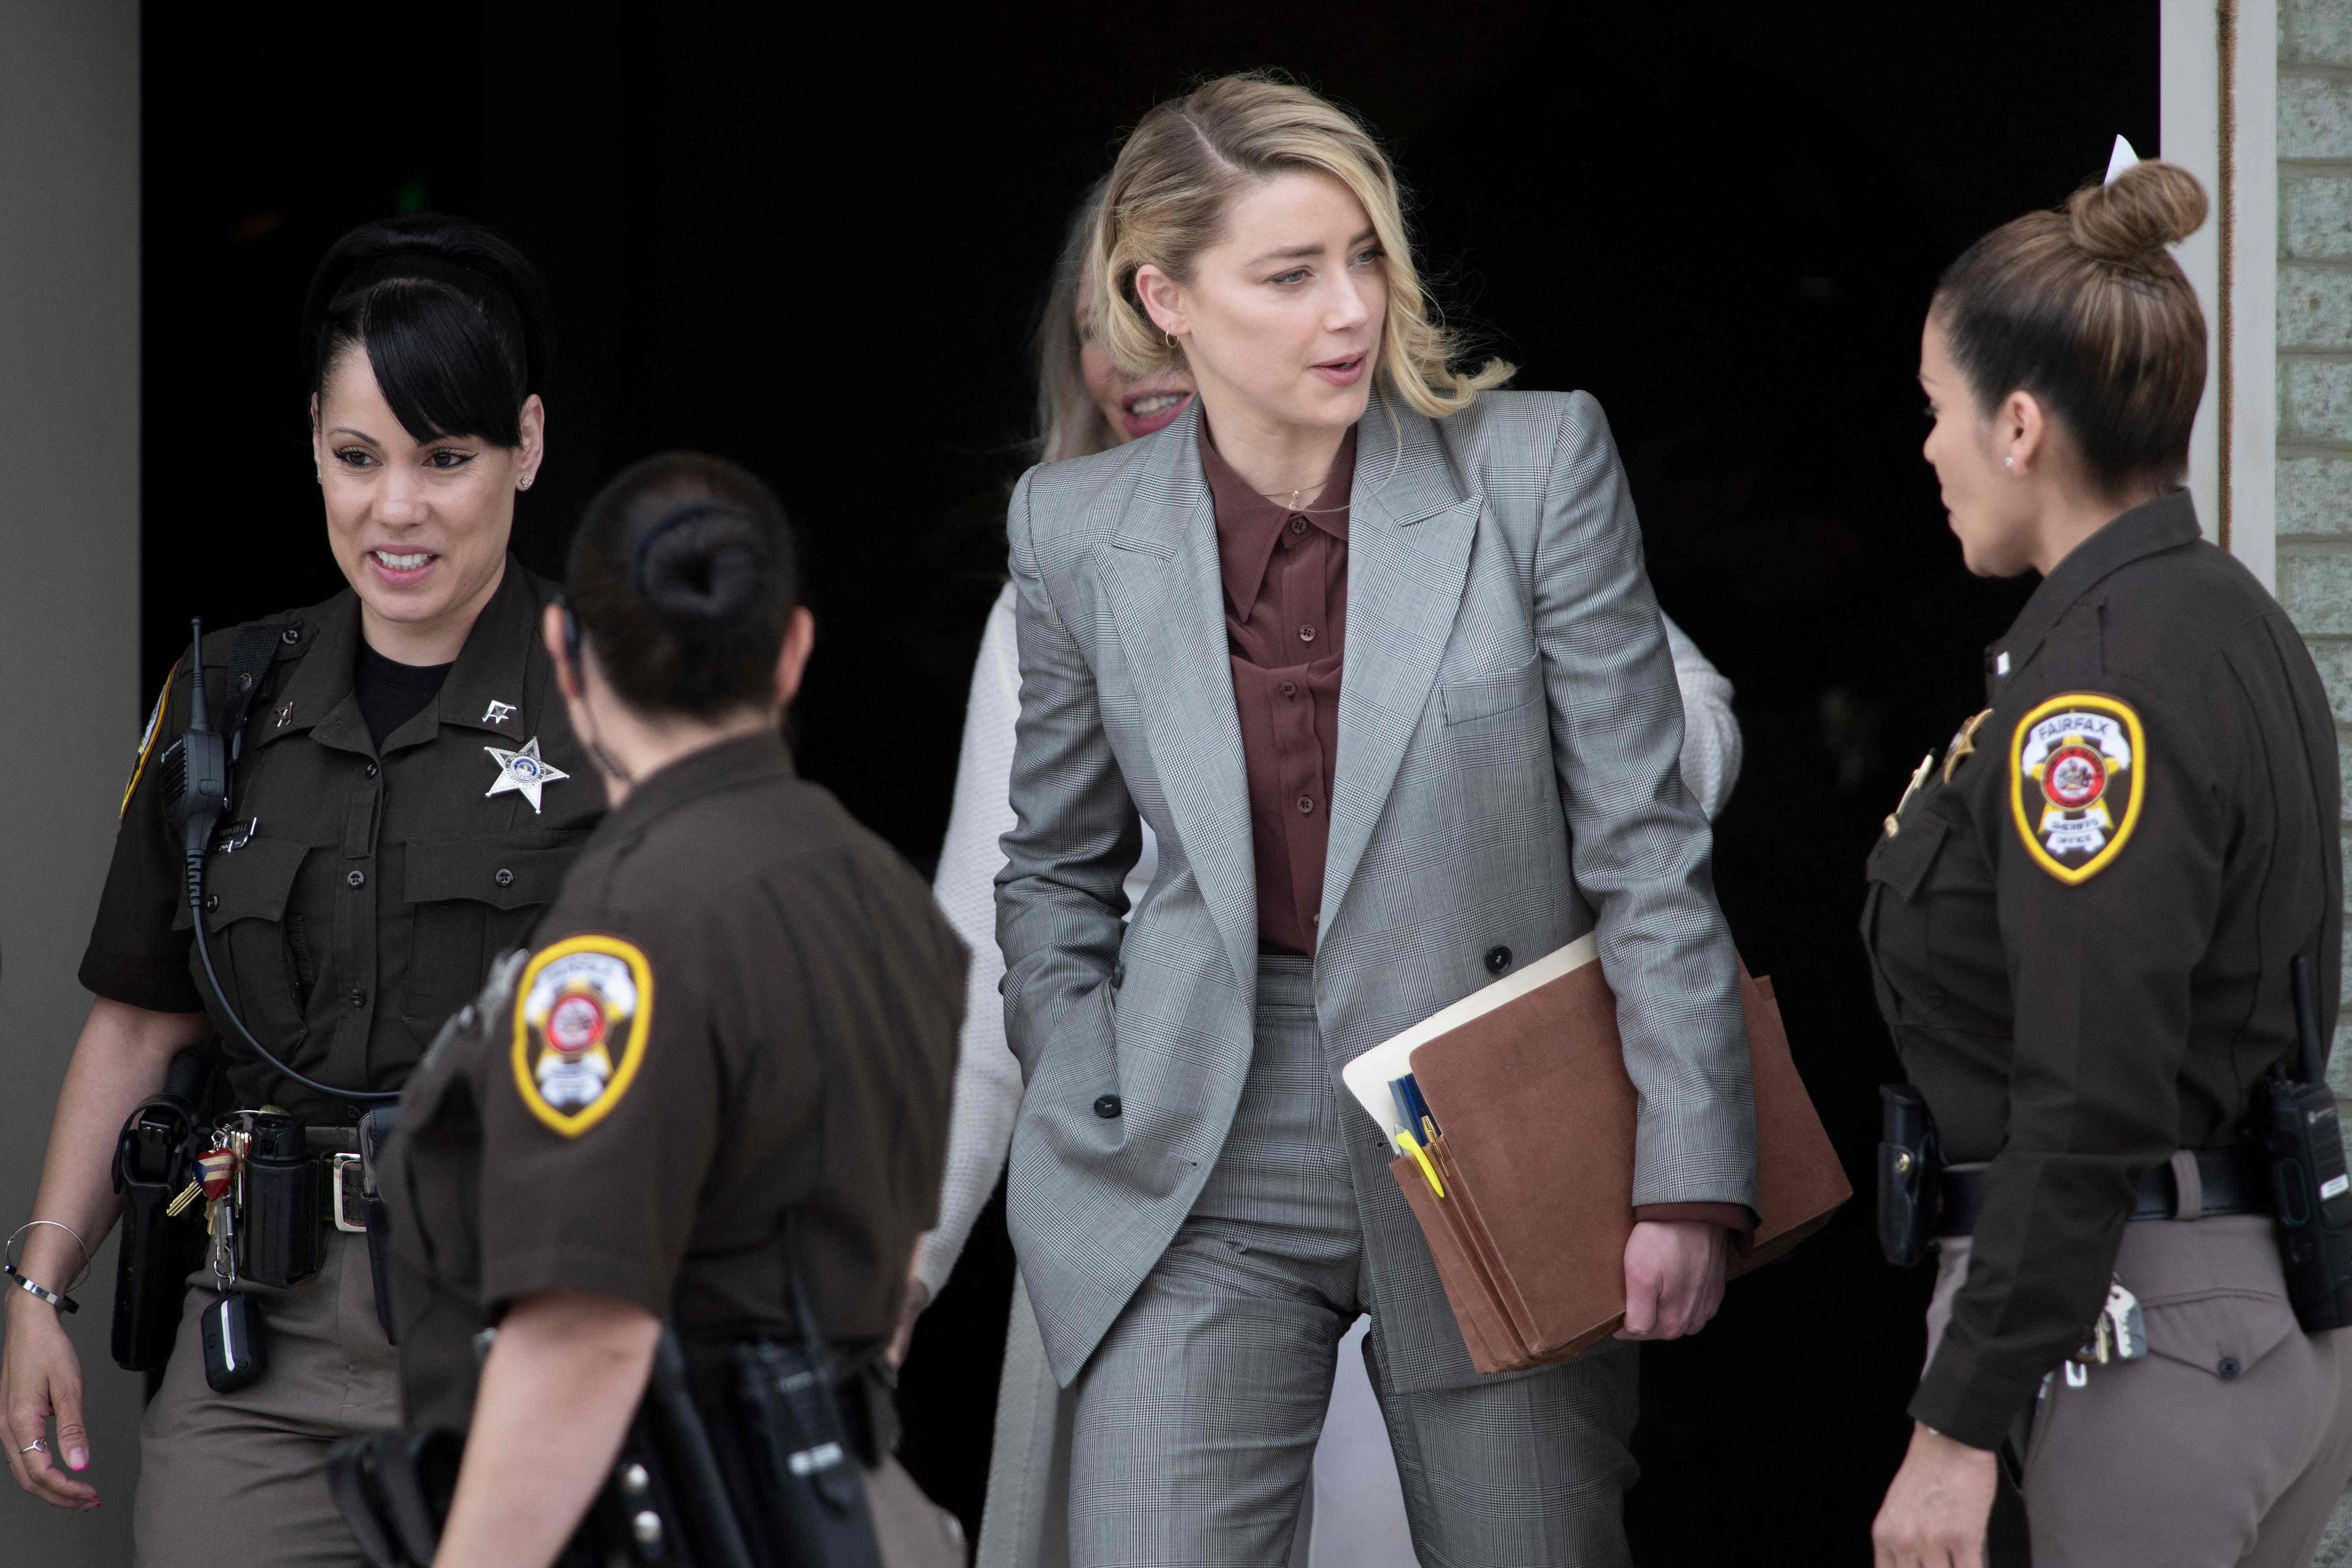 Amber Heard y Johnny Depp se enfrentaron en los tribunales por un caso de difamación. (Foto Prensa Libre: AFP)